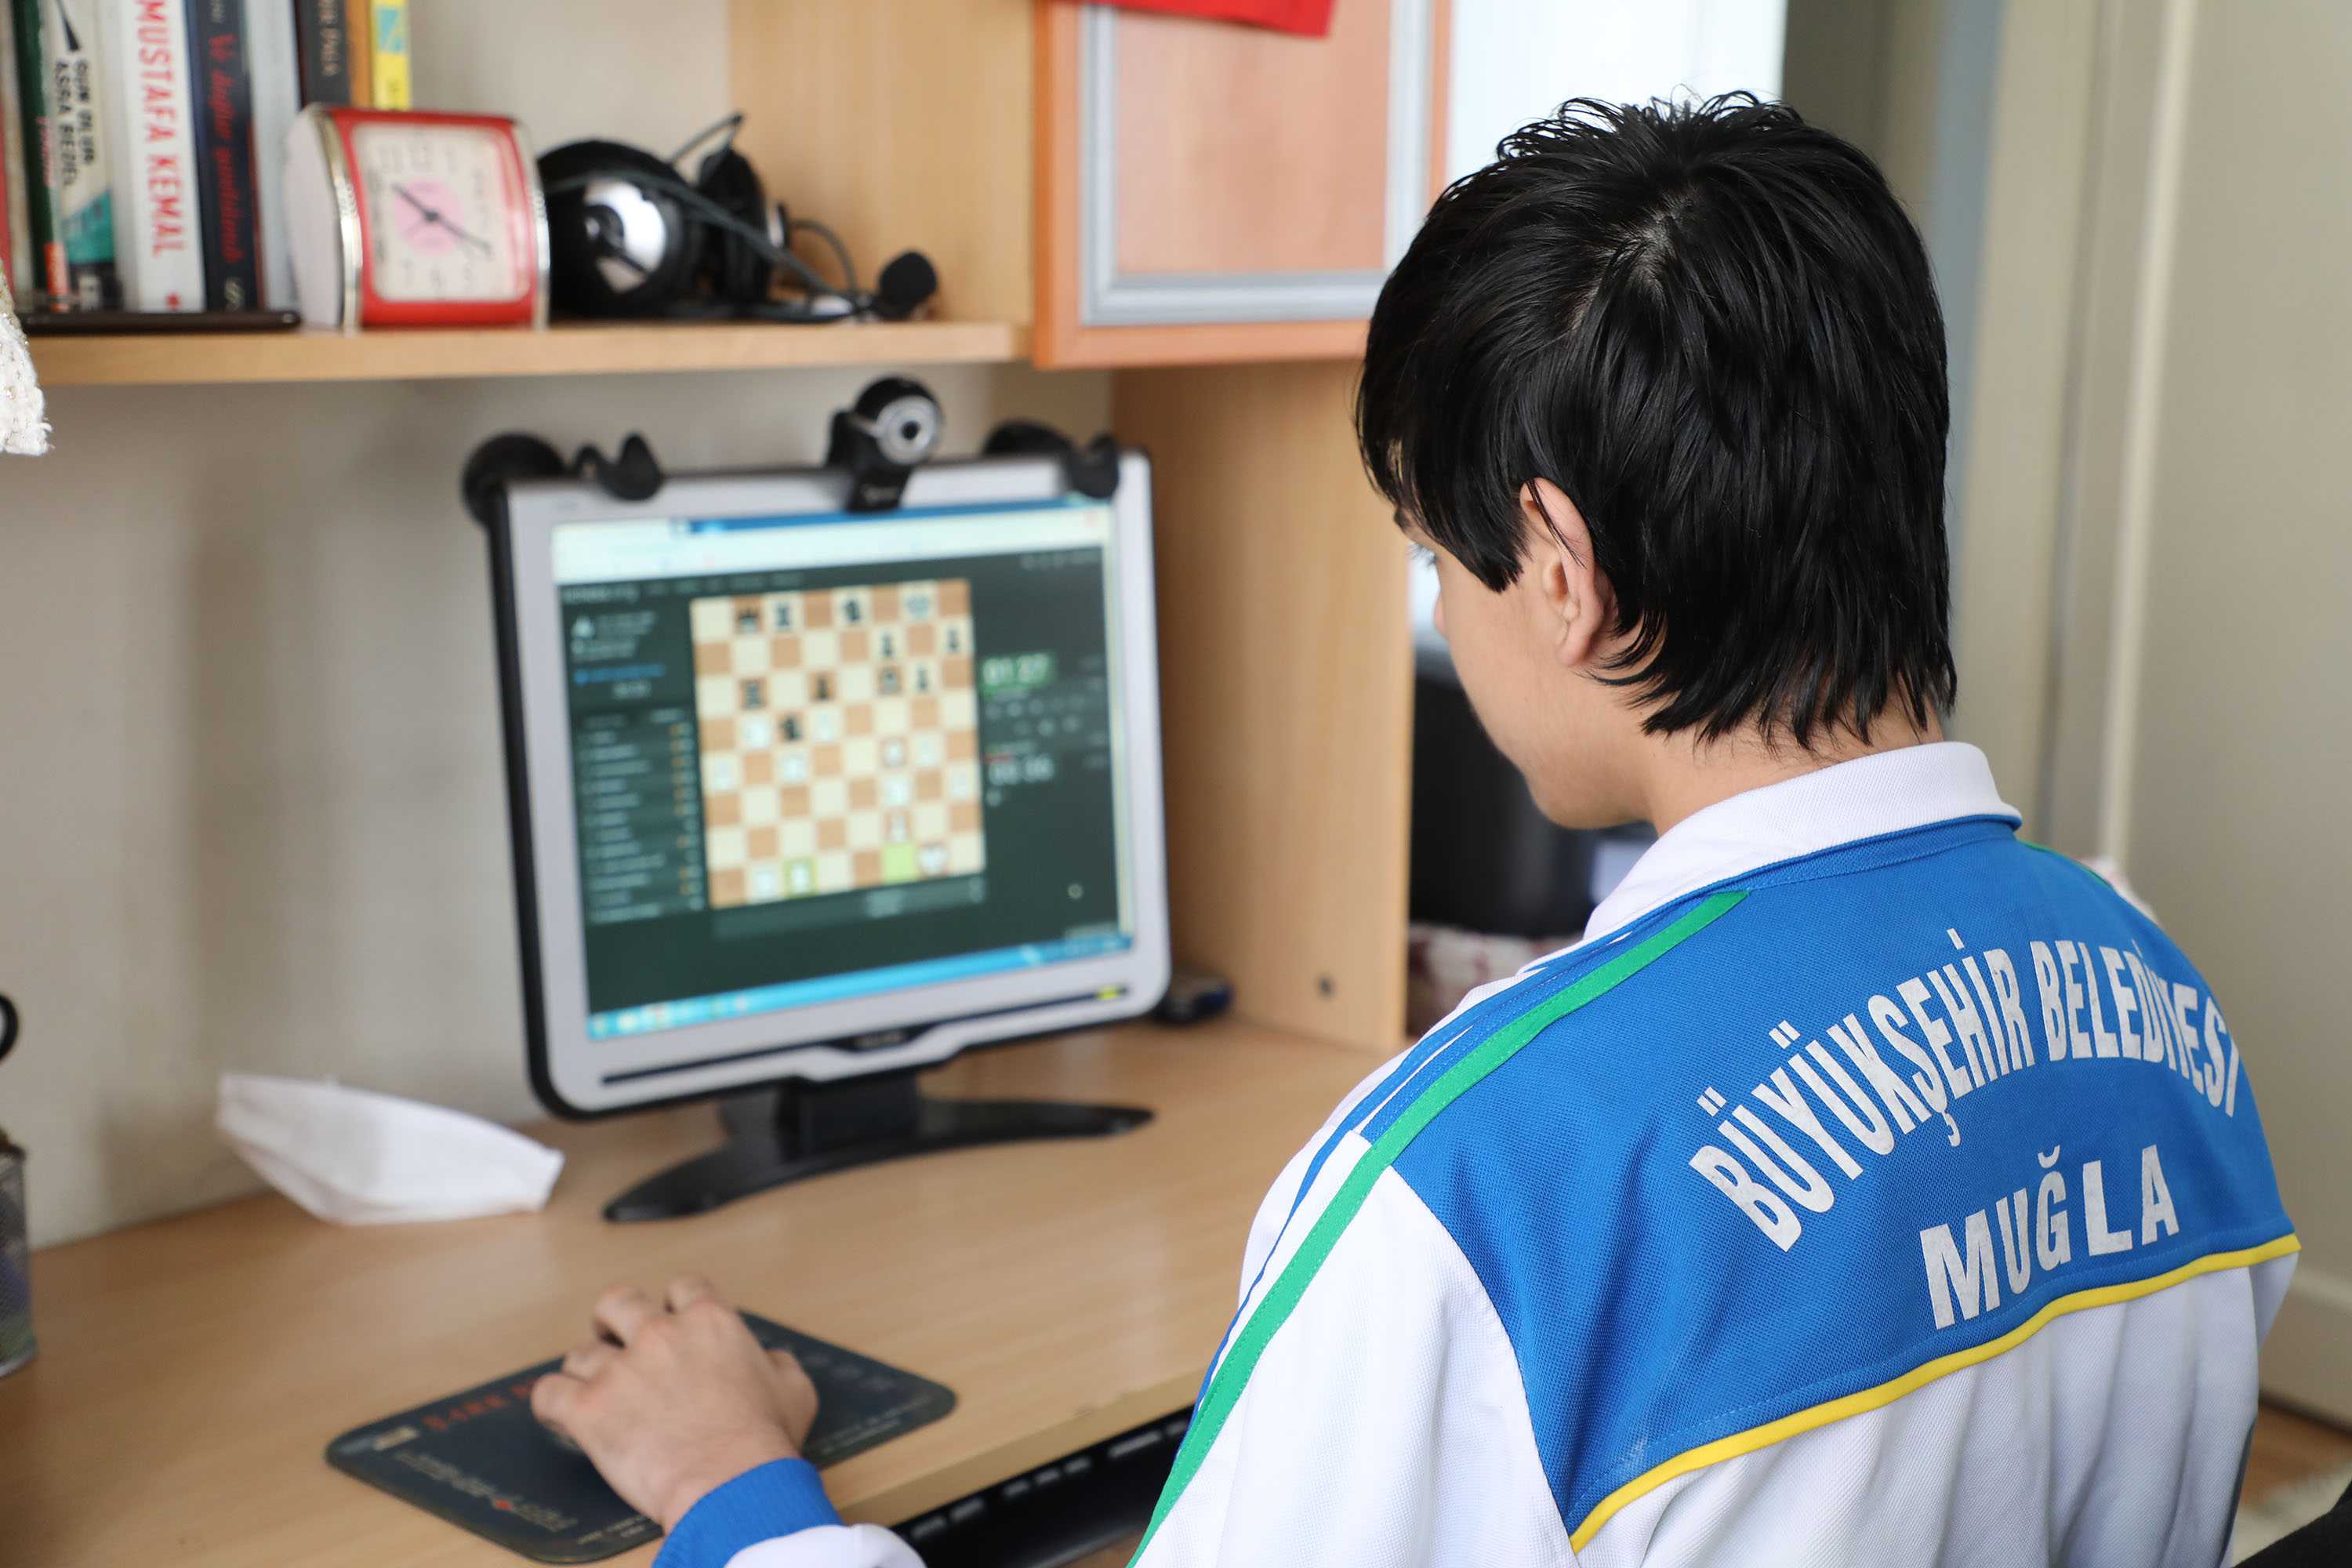 Muğlanın satranç turnuvasında 4 ülke online yarışacak